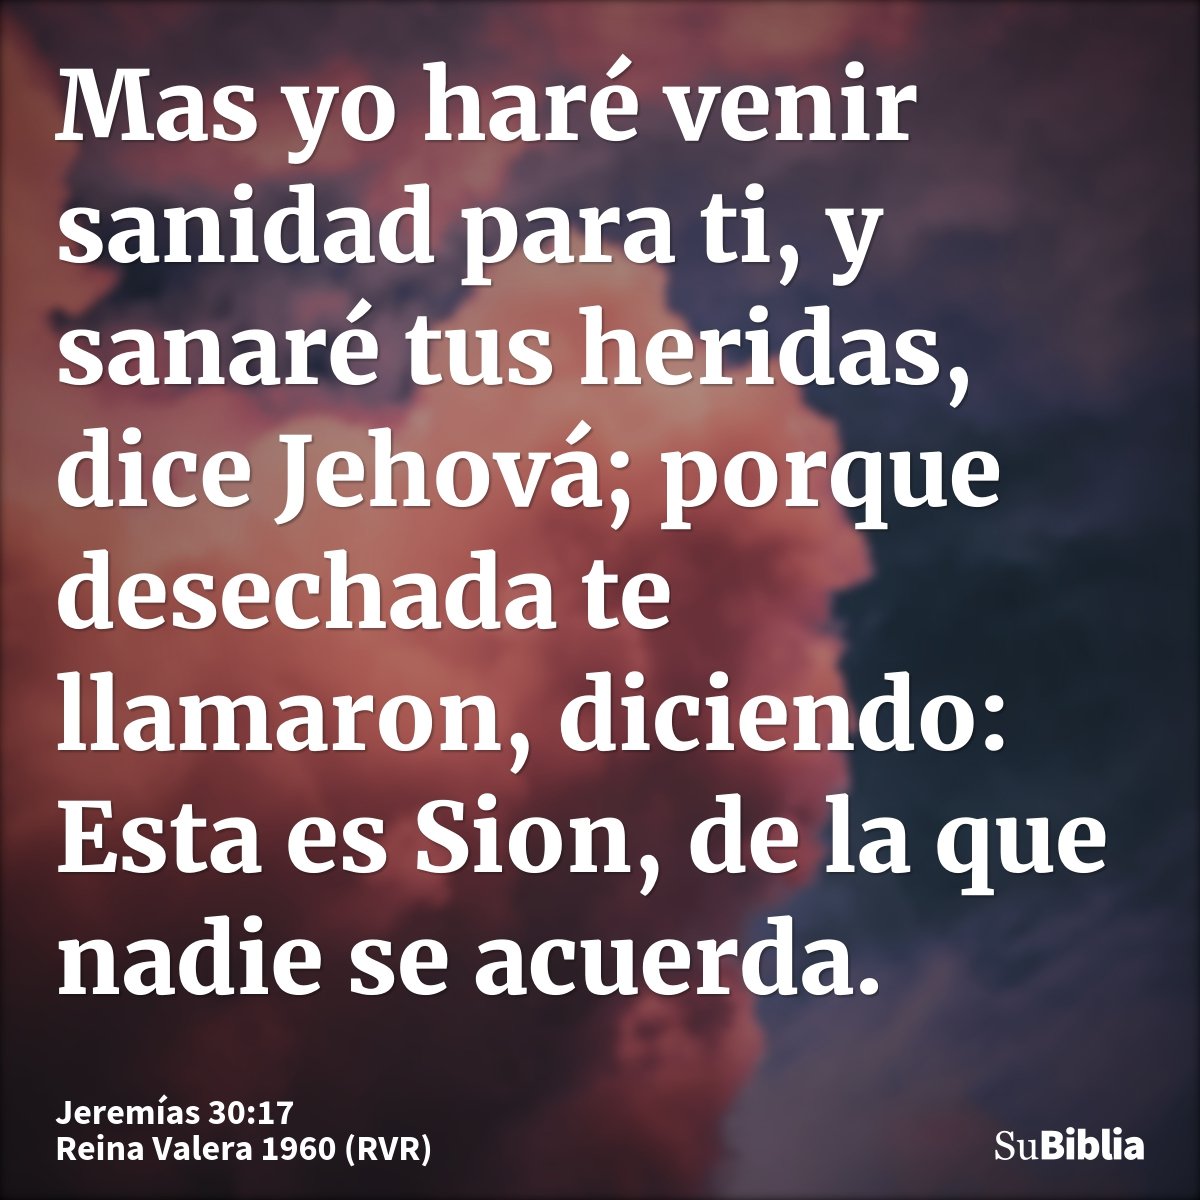 Mas yo haré venir sanidad para ti, y sanaré tus heridas, dice Jehová; porque desechada te llamaron, diciendo: Esta es Sion, de la que nadie se acuerda.